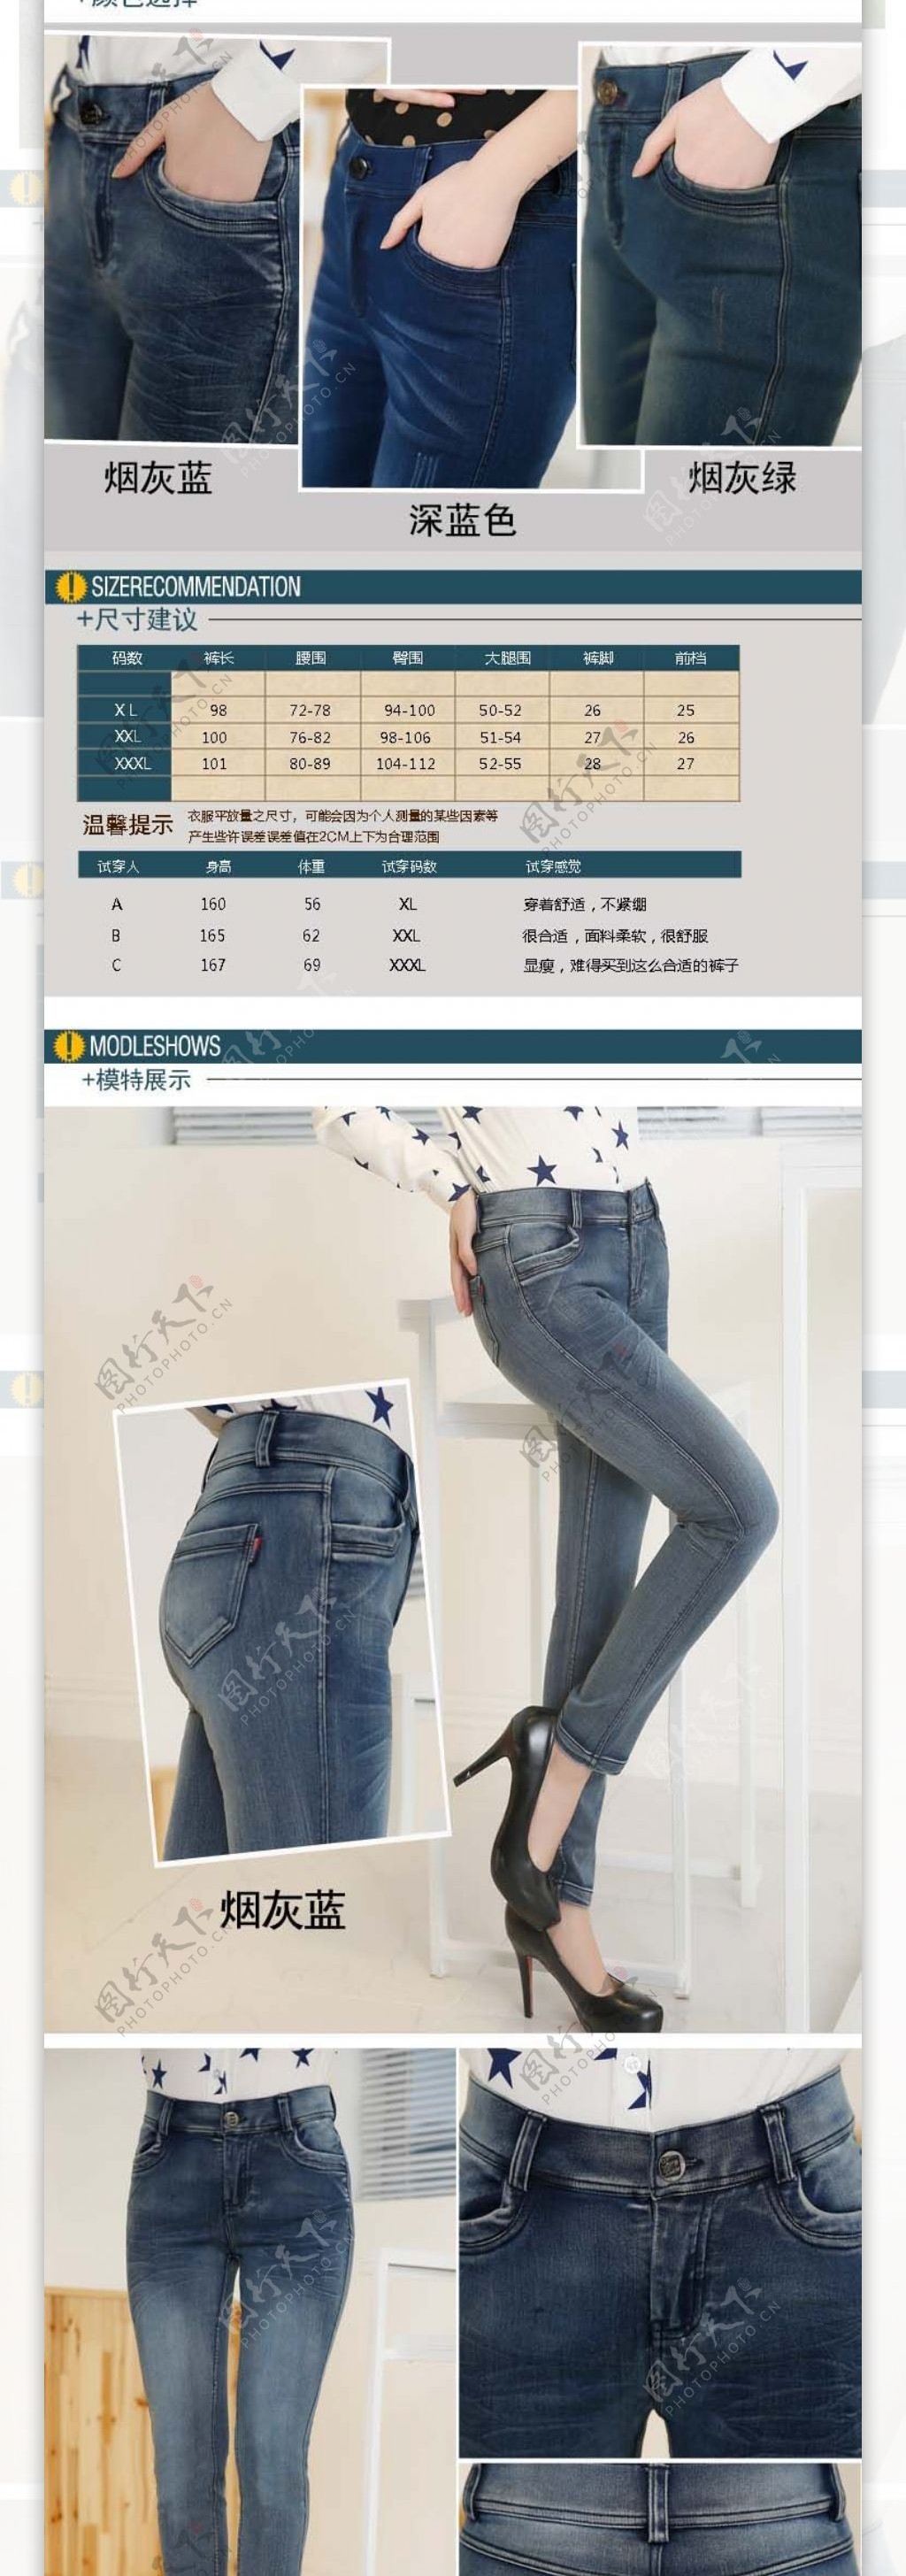 韩版女式牛仔裤详情页模板设计